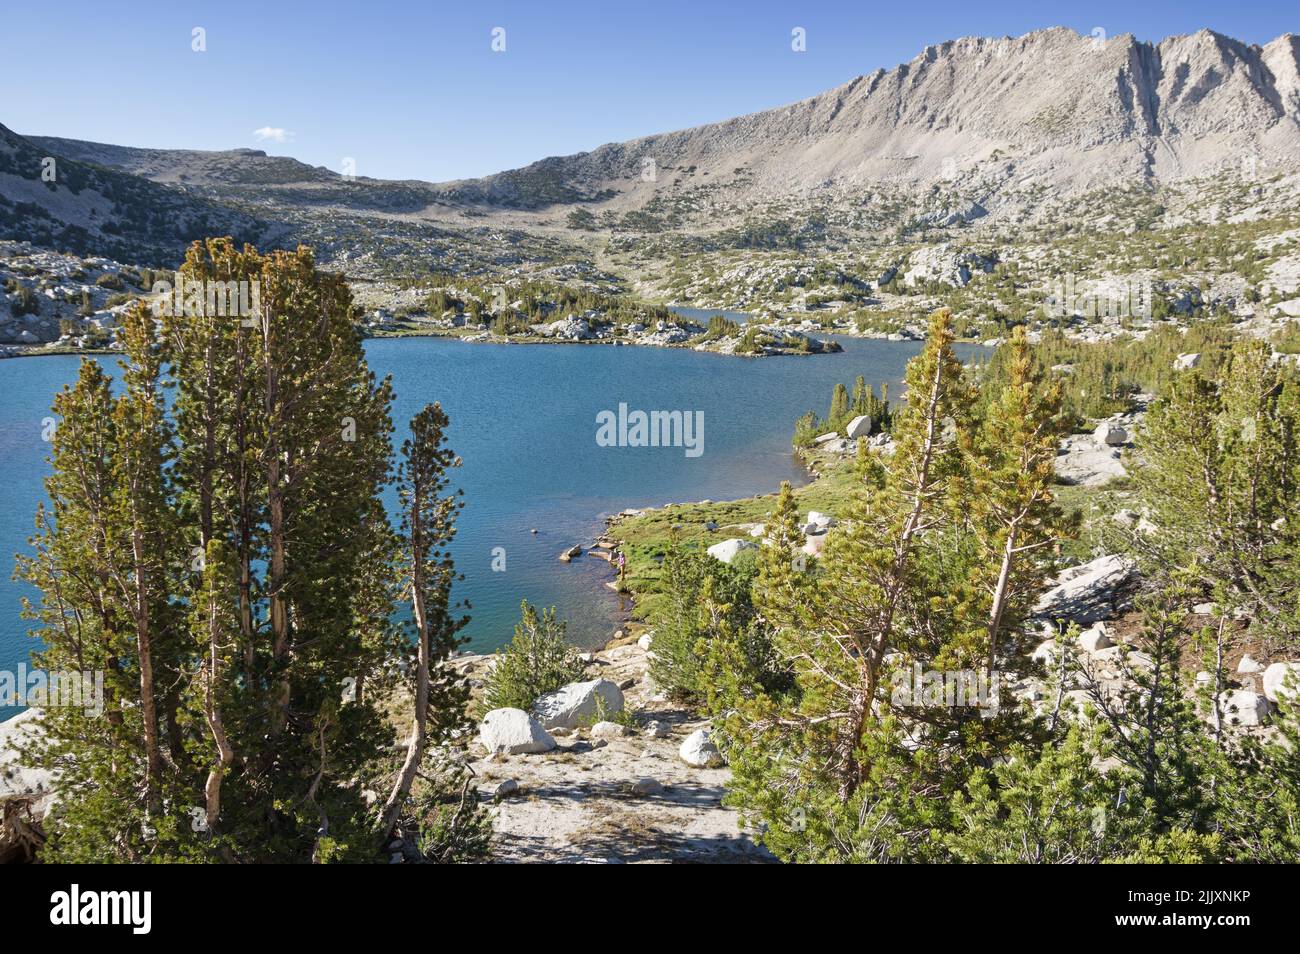 Una vista distante de una mujer pescando en un lago en Pioneer Basin en las montañas de Sierra Nevada con el Monte Stanford Norte Foto de stock